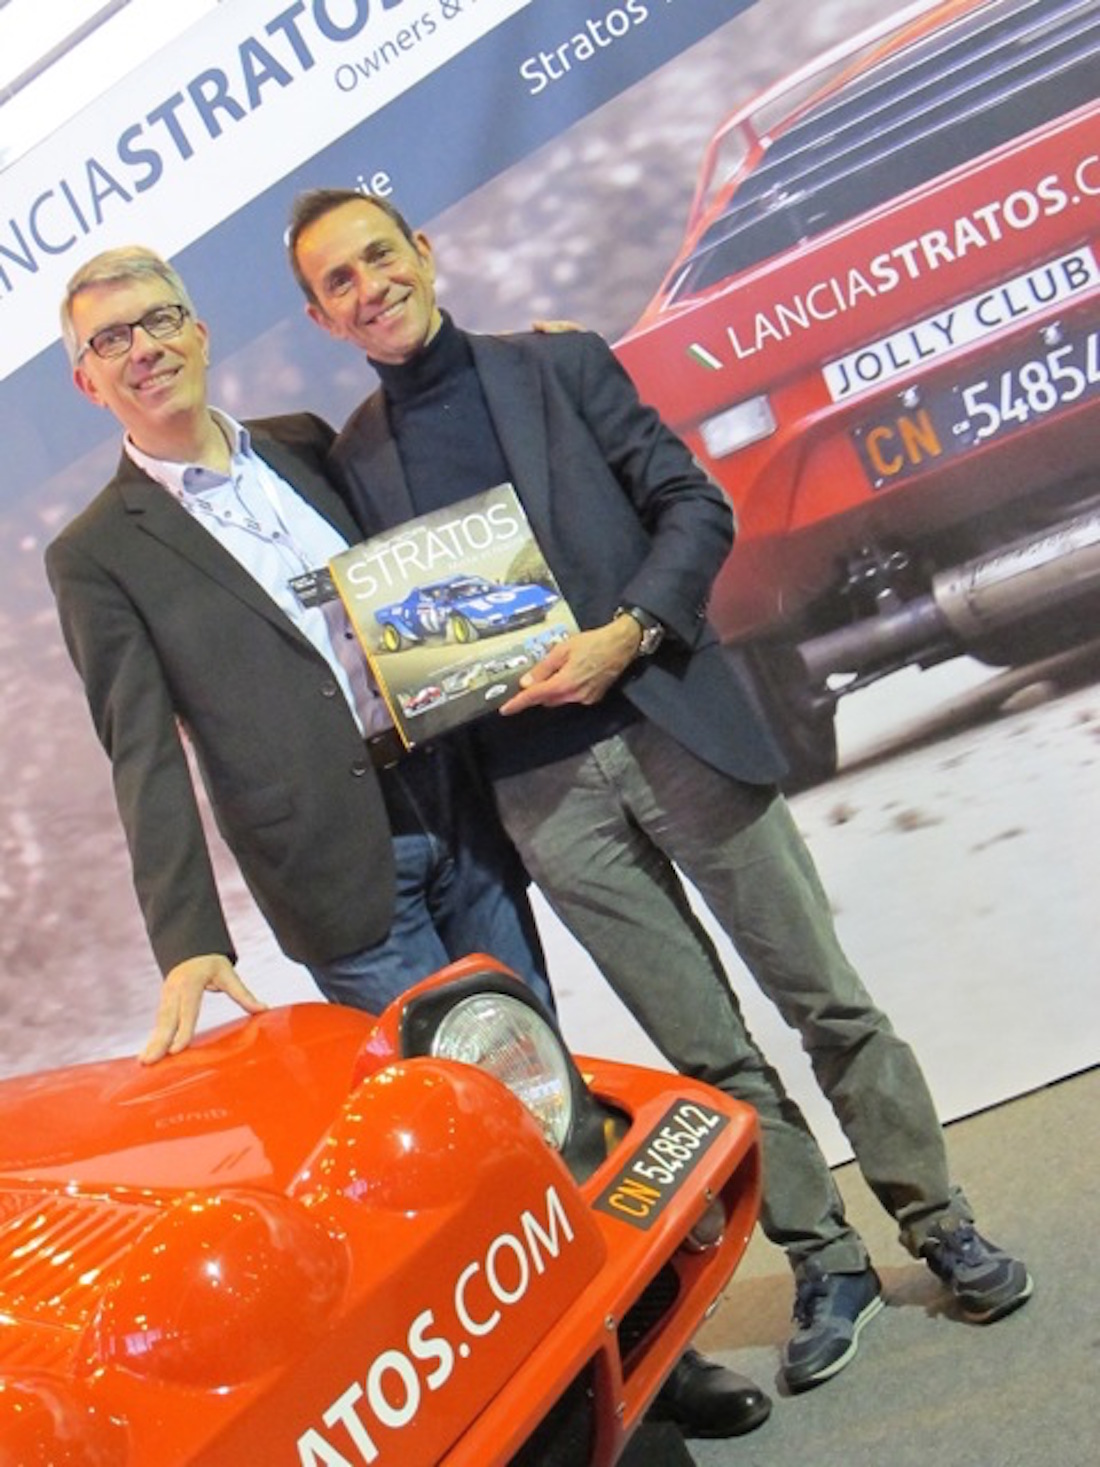 Erik Comas and the Lancia Stratos book